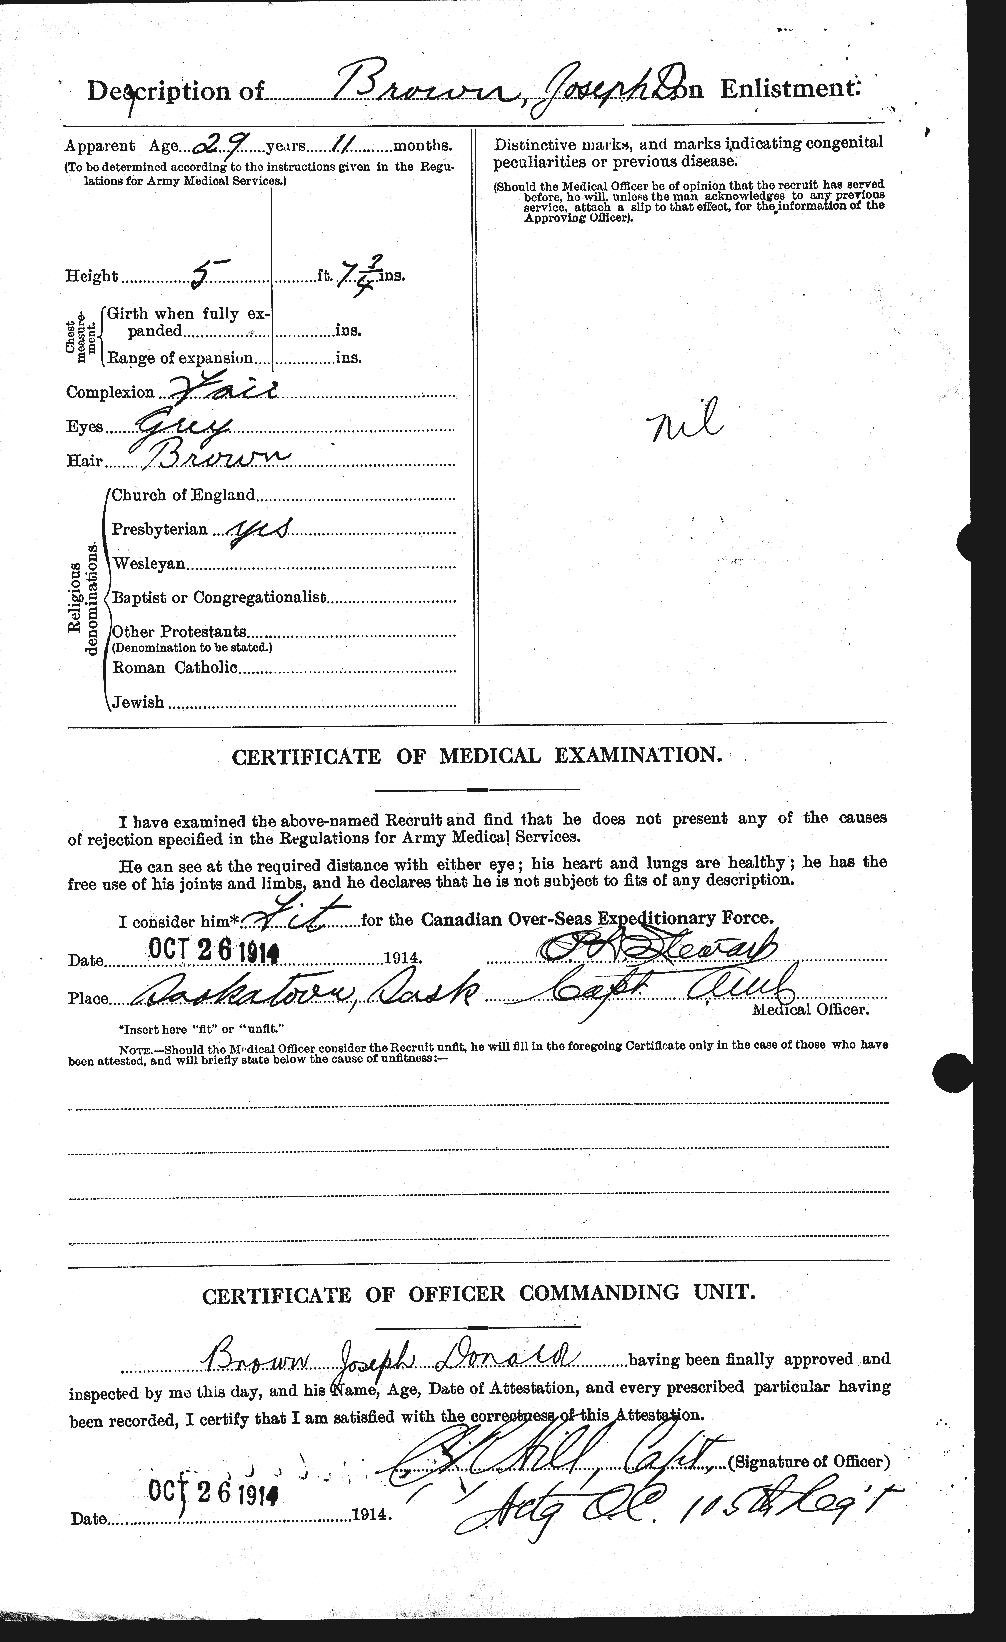 Dossiers du Personnel de la Première Guerre mondiale - CEC 265964b